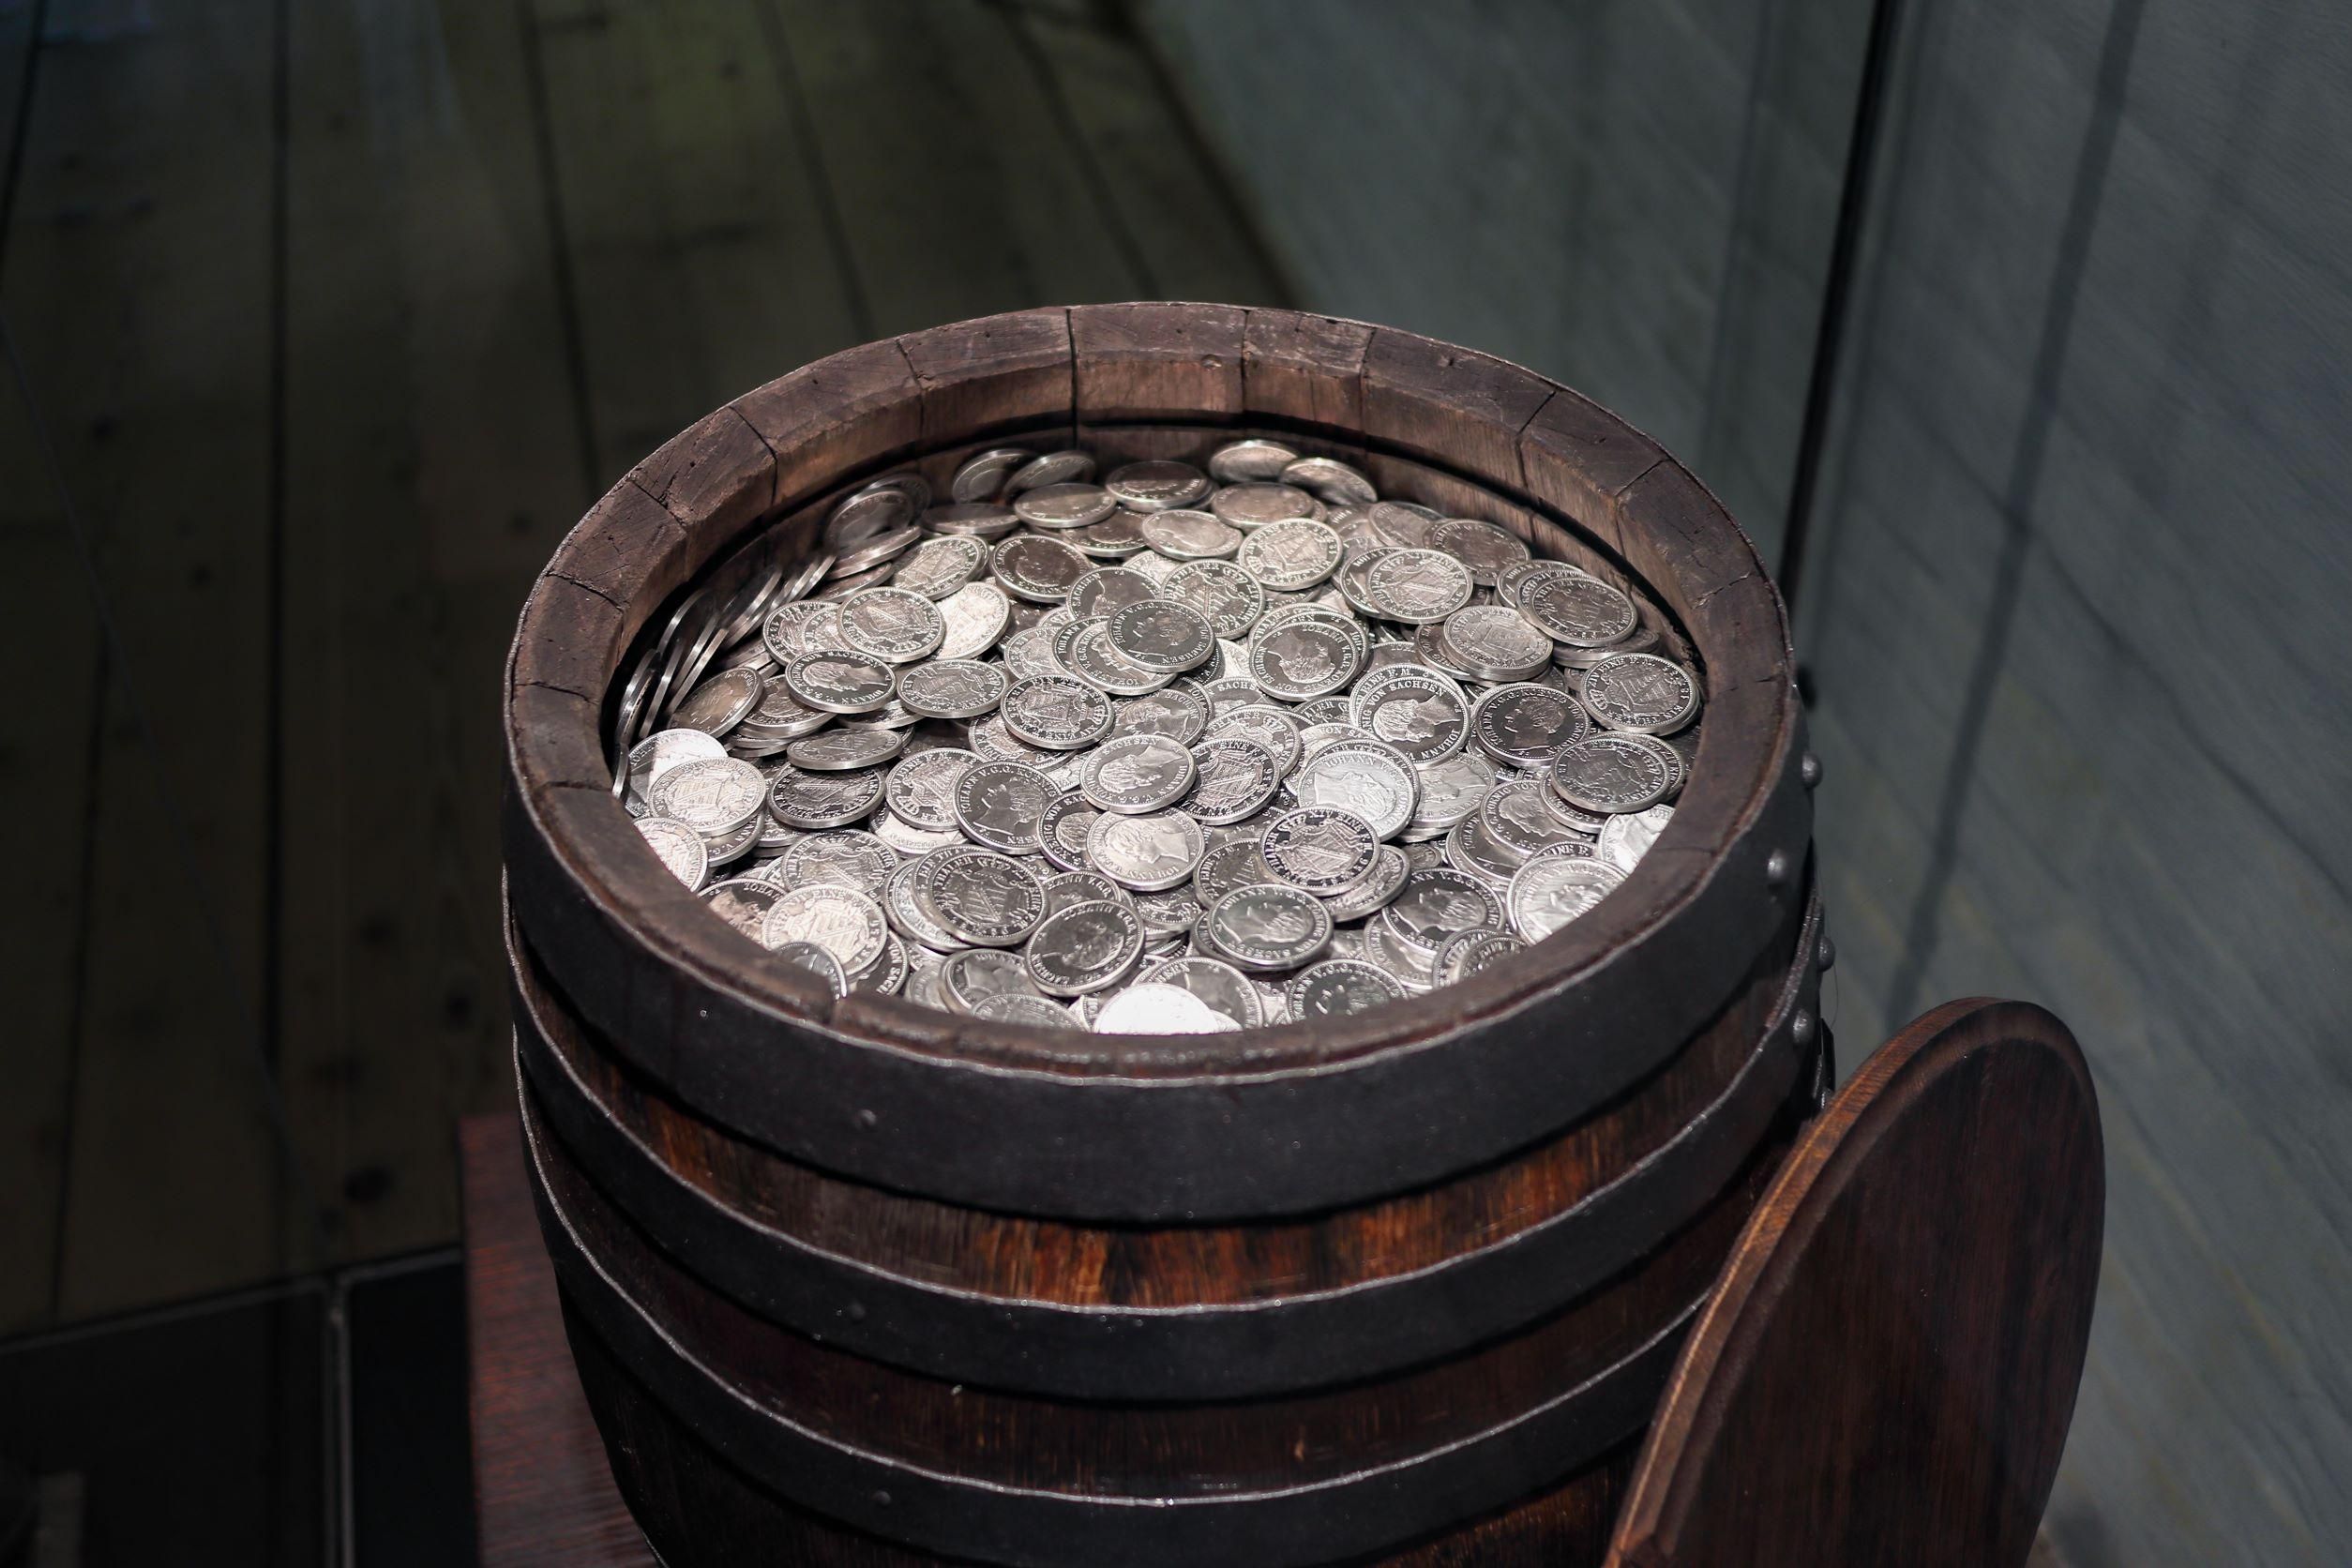 Régies ezüstpénzek - a kép illusztráció